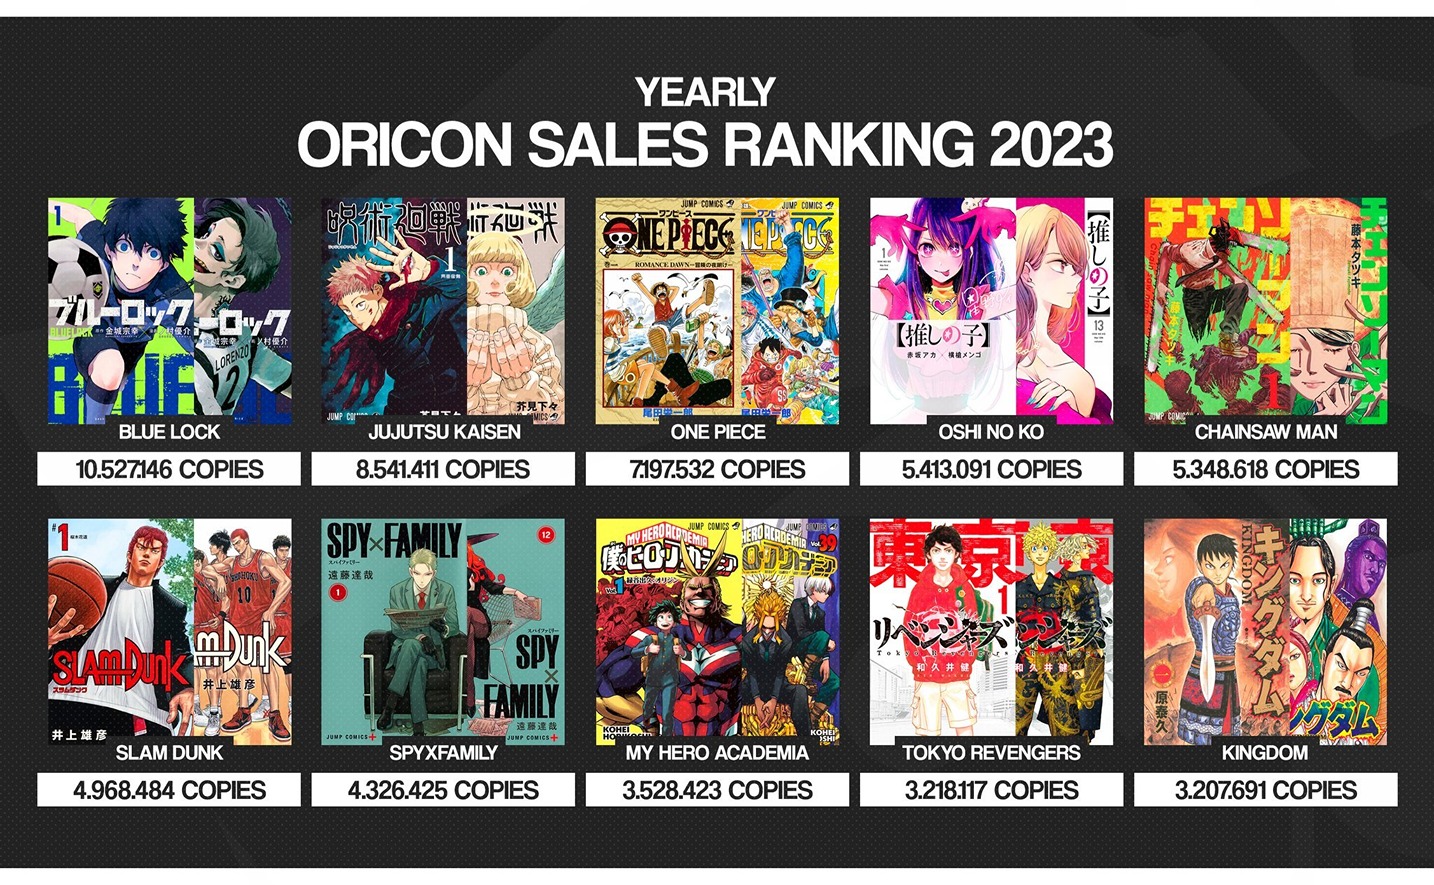 Blue Lock trở thành Manga bán chạy nhất năm 2023 khi vượt qua các Manga như One Piece & Jujutsu Kaisen